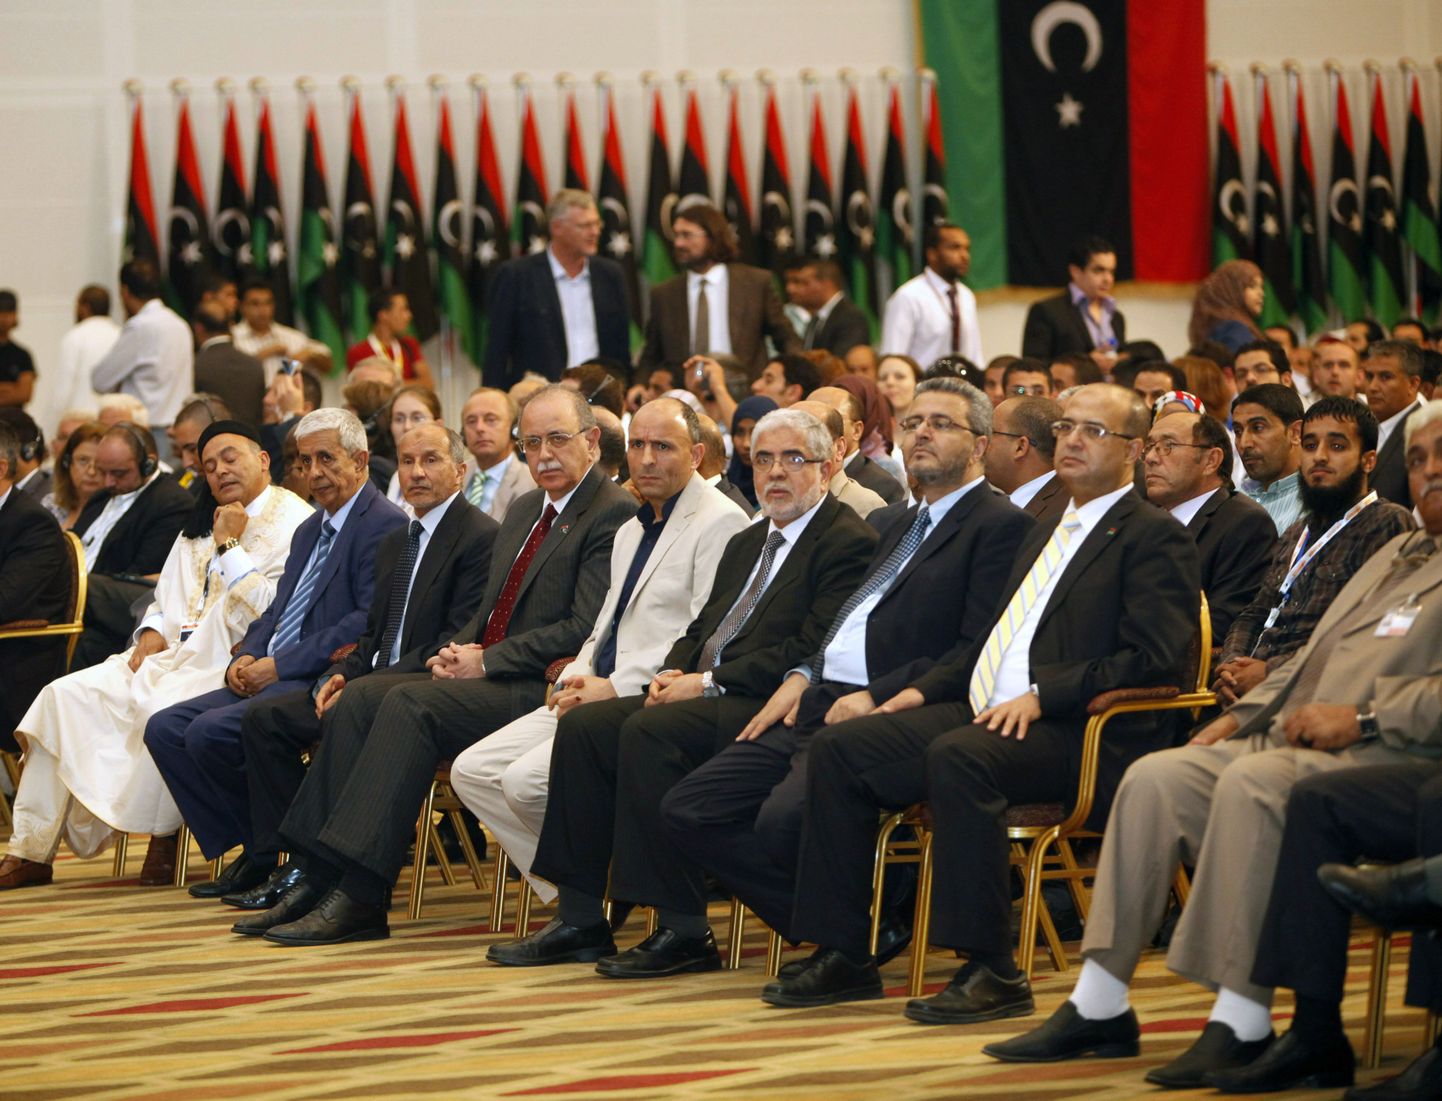 Liibüa poliitikud ootamas valimistulemusi